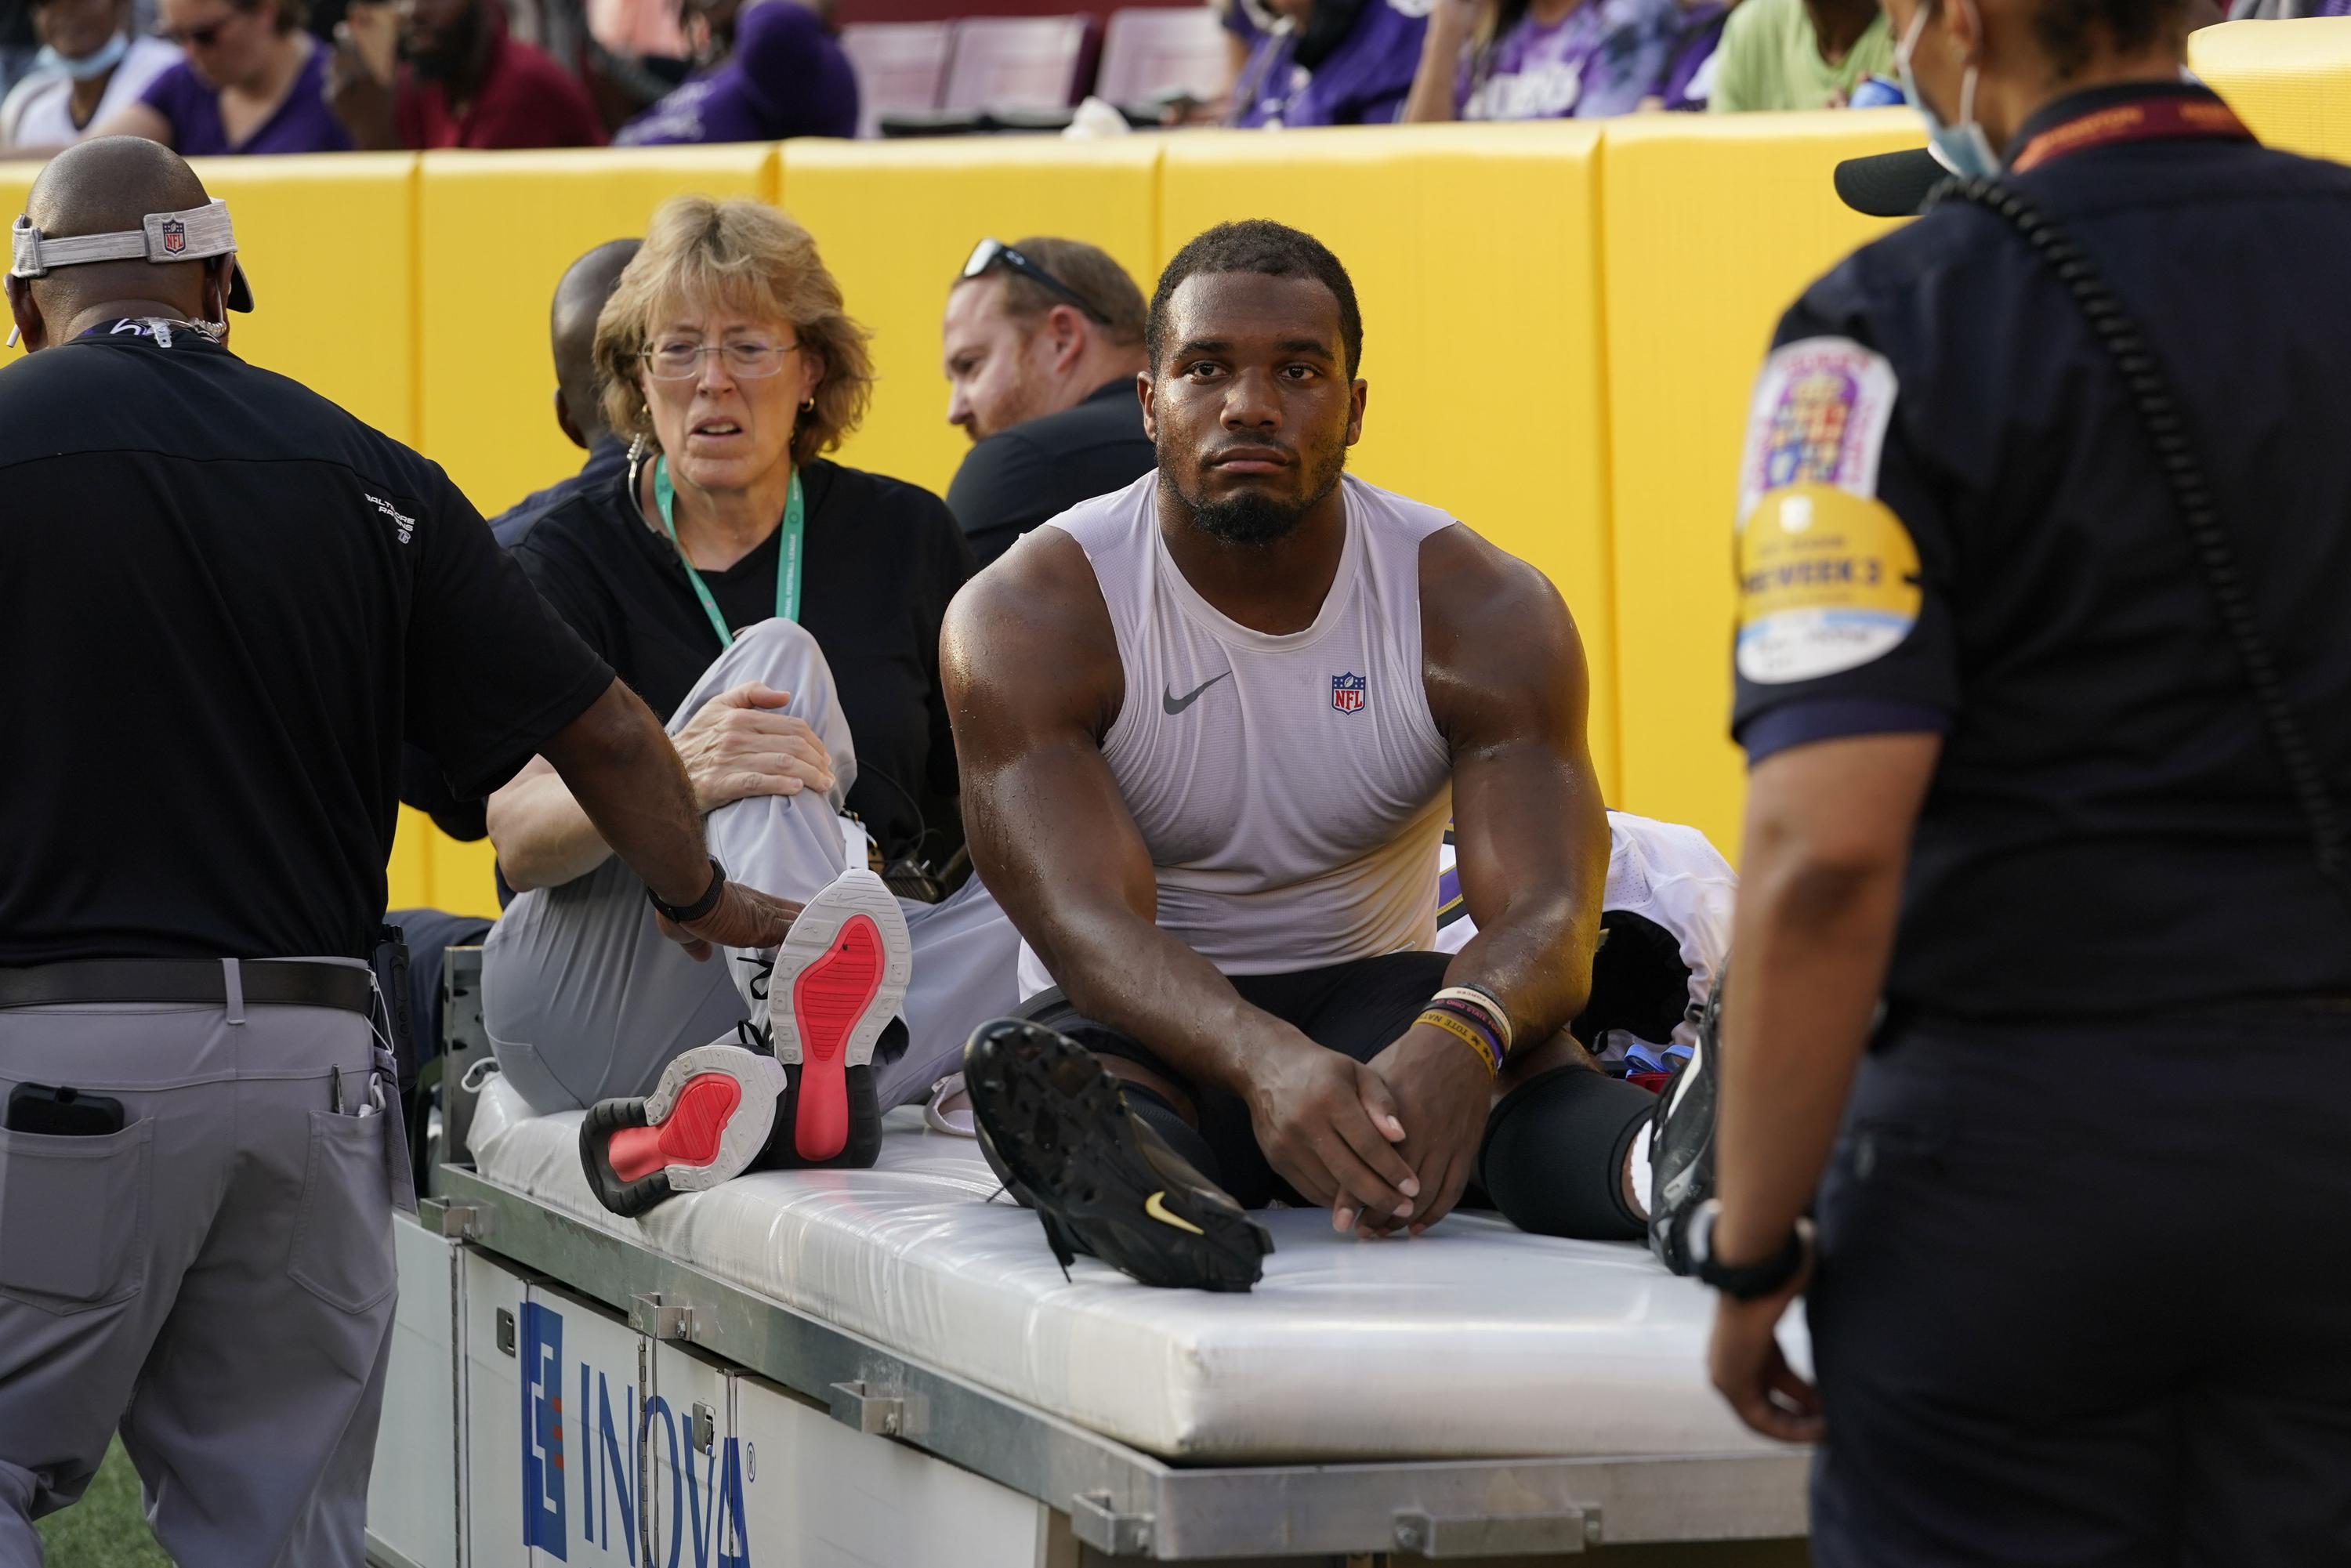 Ravens RB J.K. Dobbins to have injured left knee examined | AP News